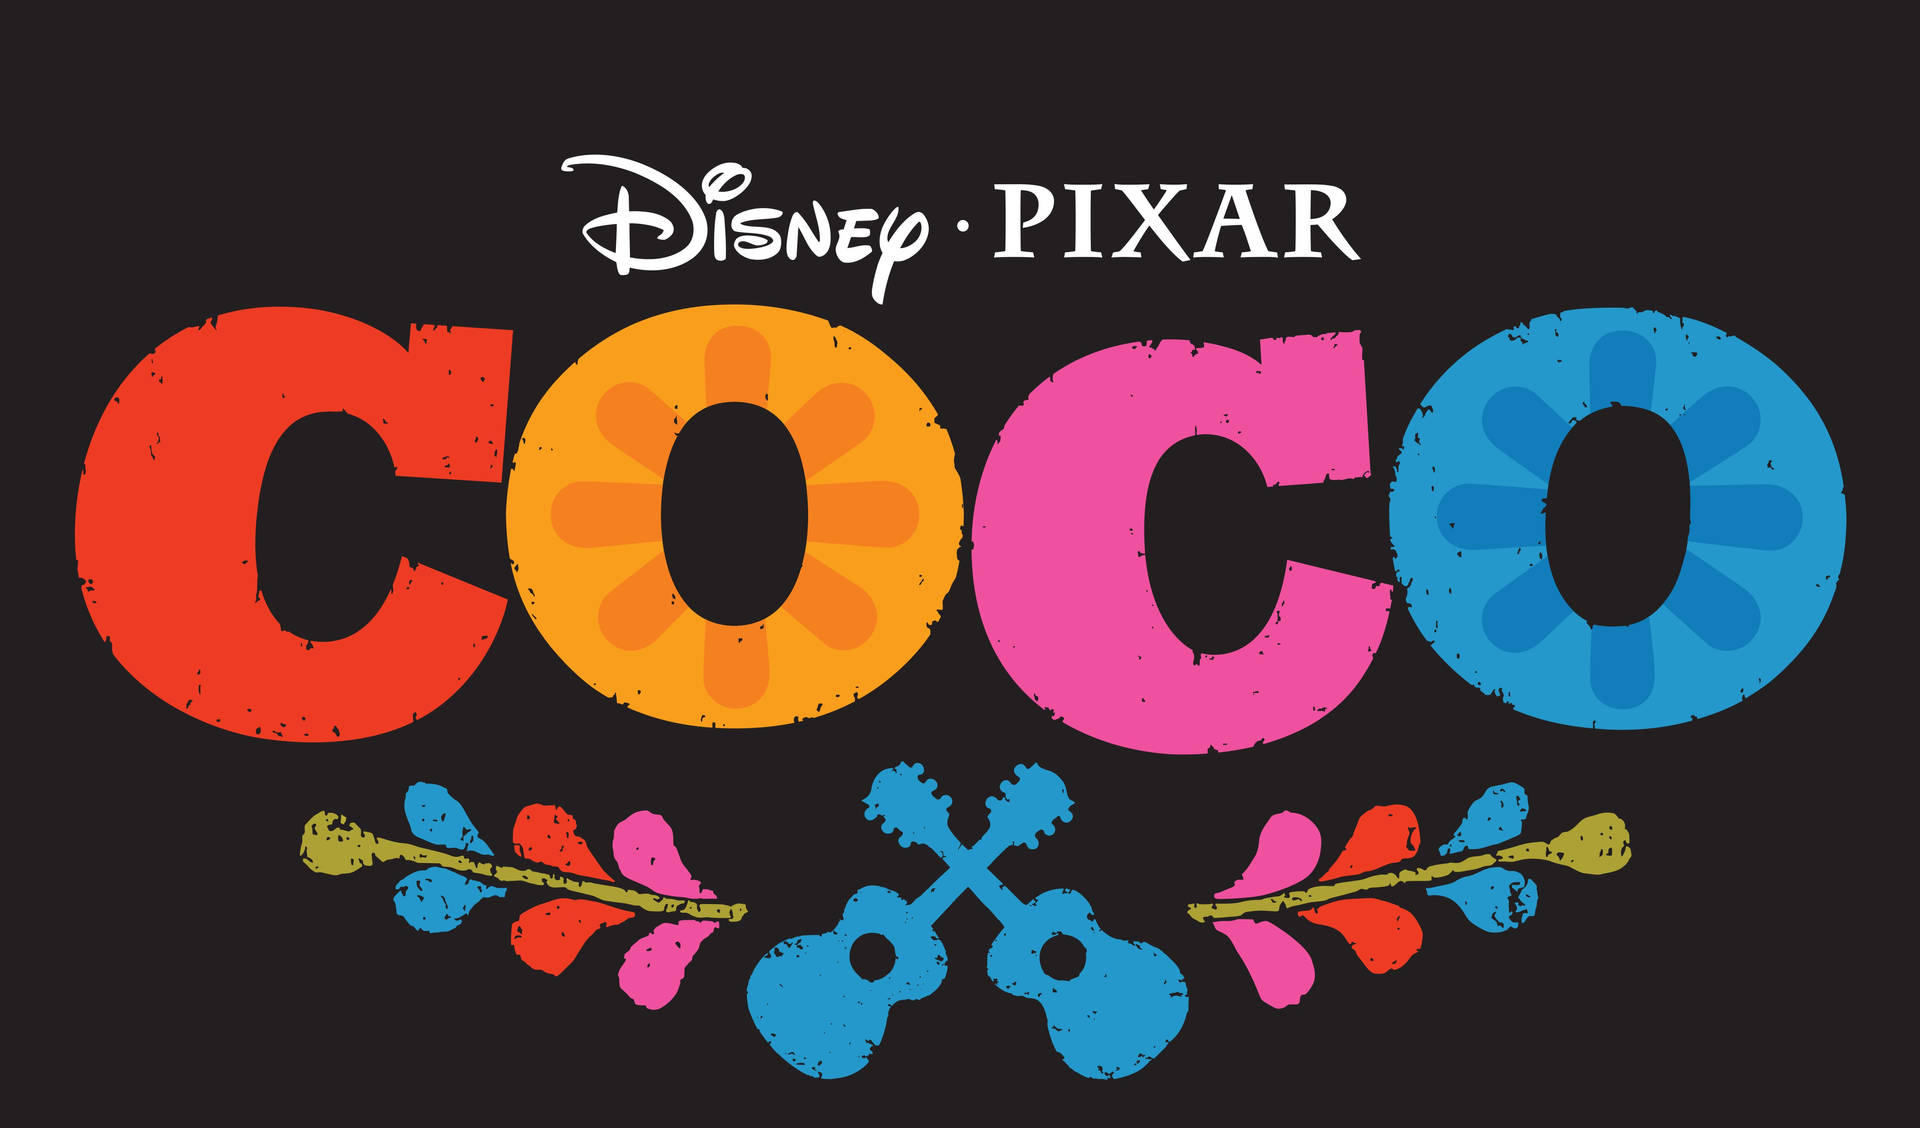 Coco Movie Title In Black